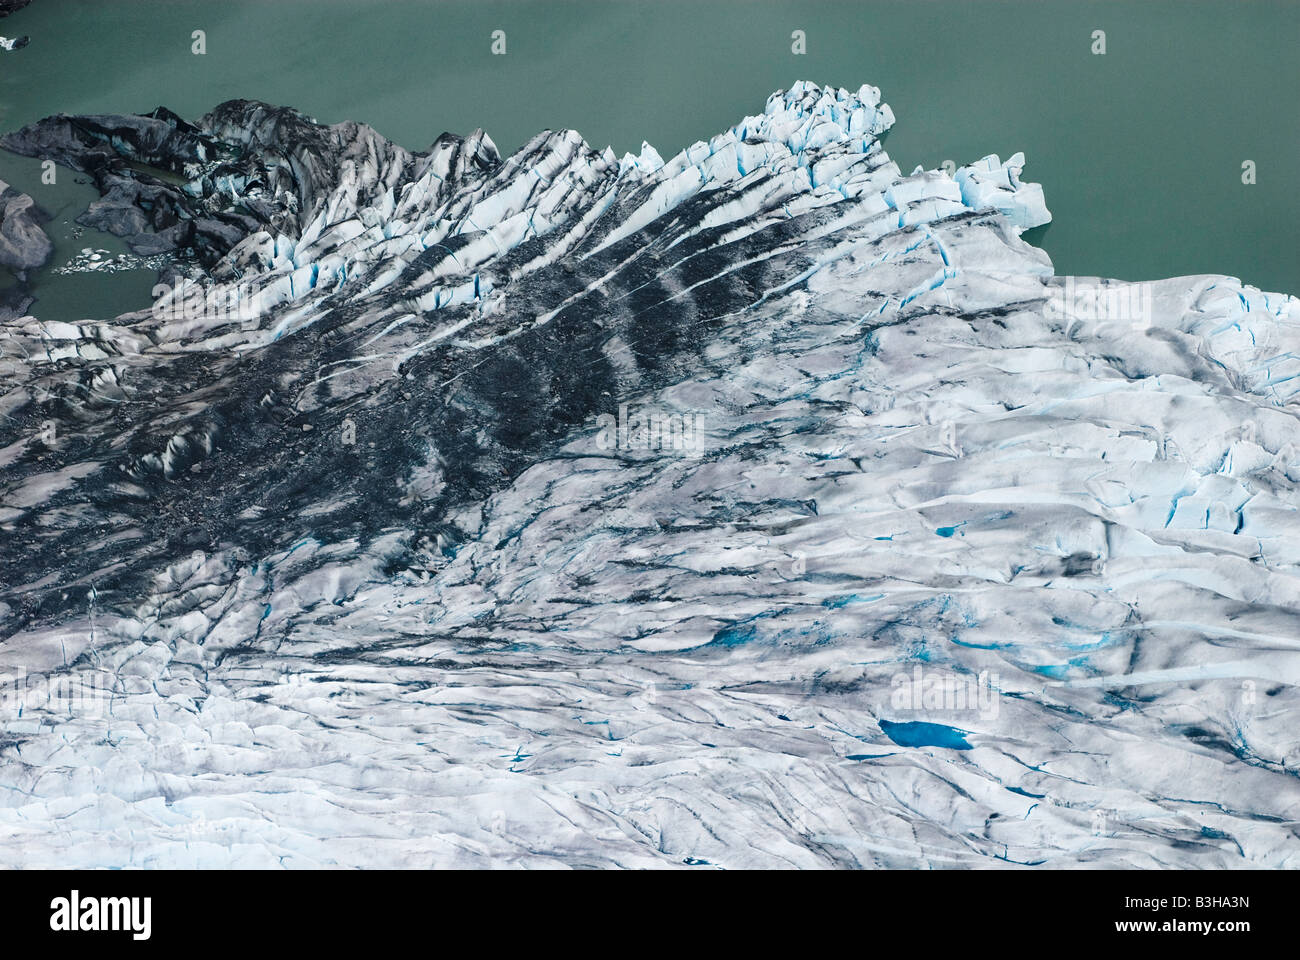 Alaska, Juneau, Mendenhall Glacier Banque D'Images